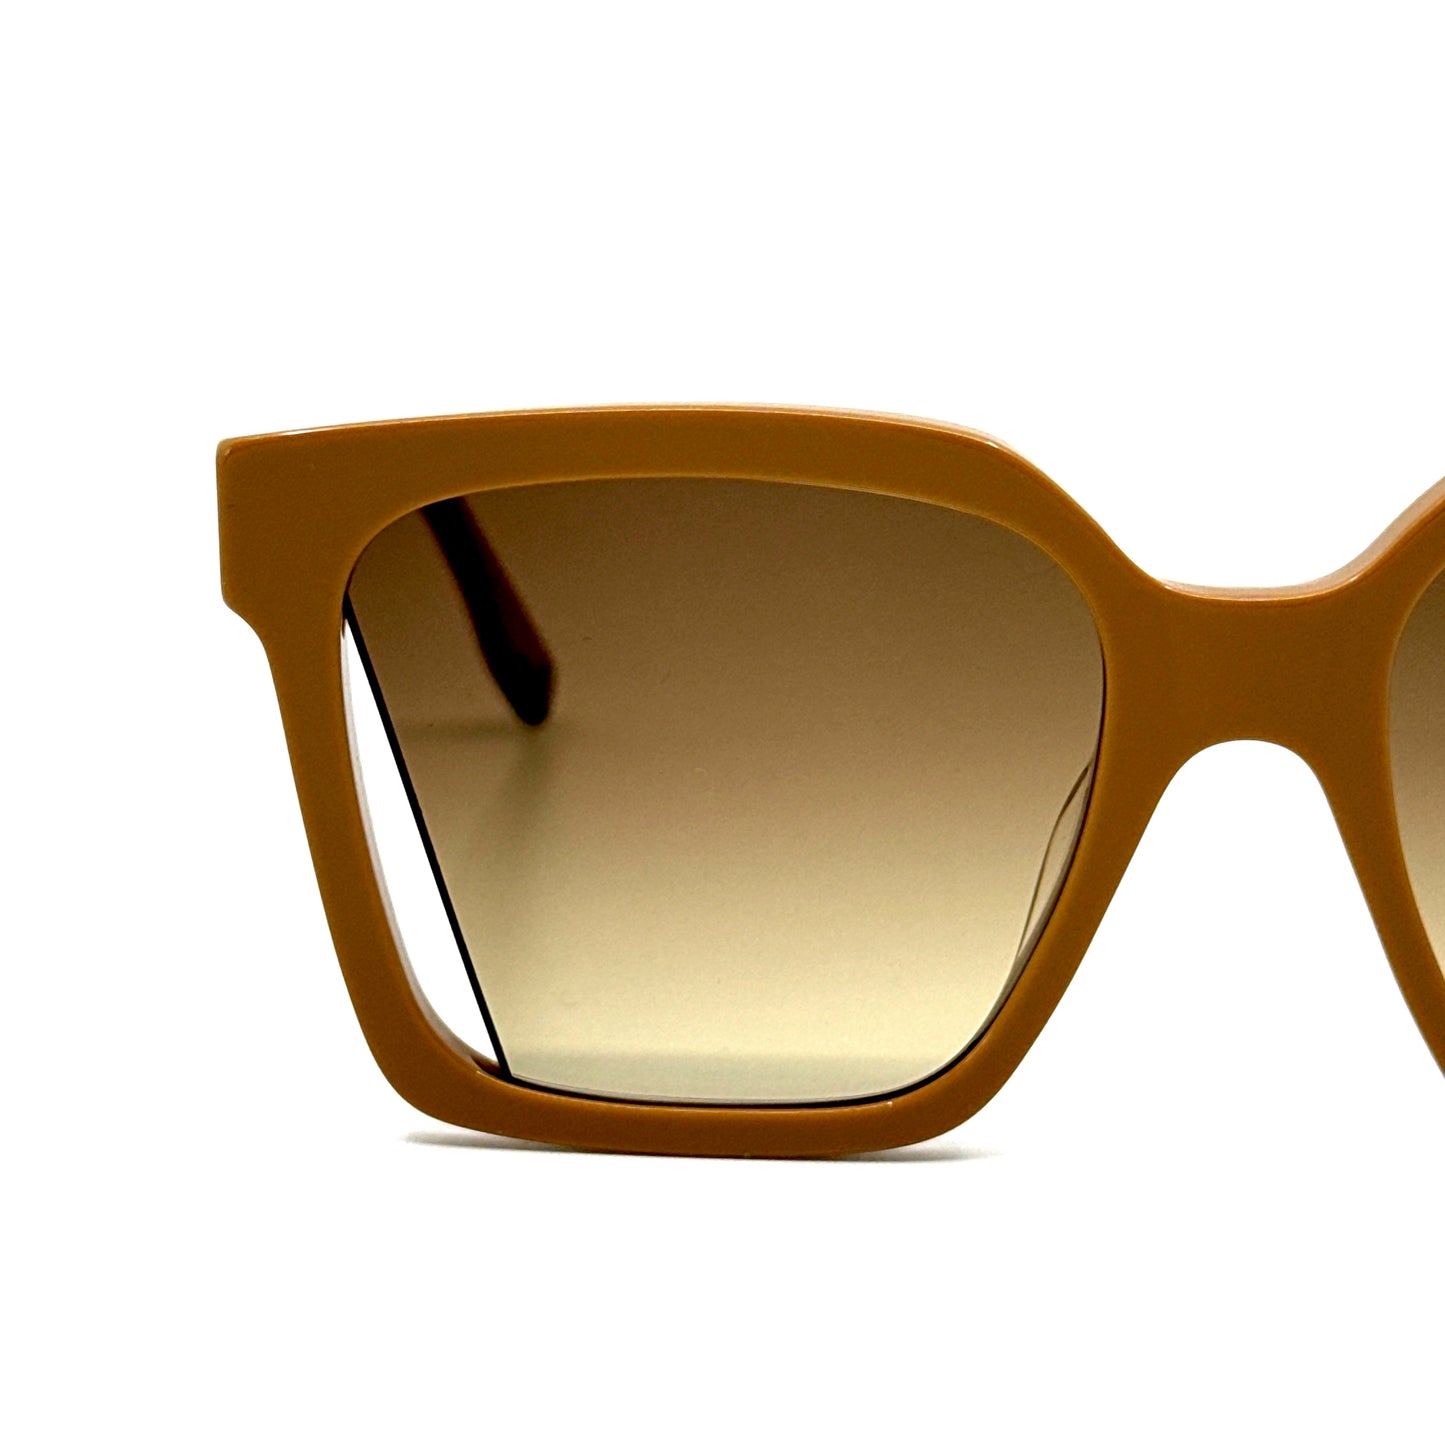 FENDI Sunglasses FE40085I 57F